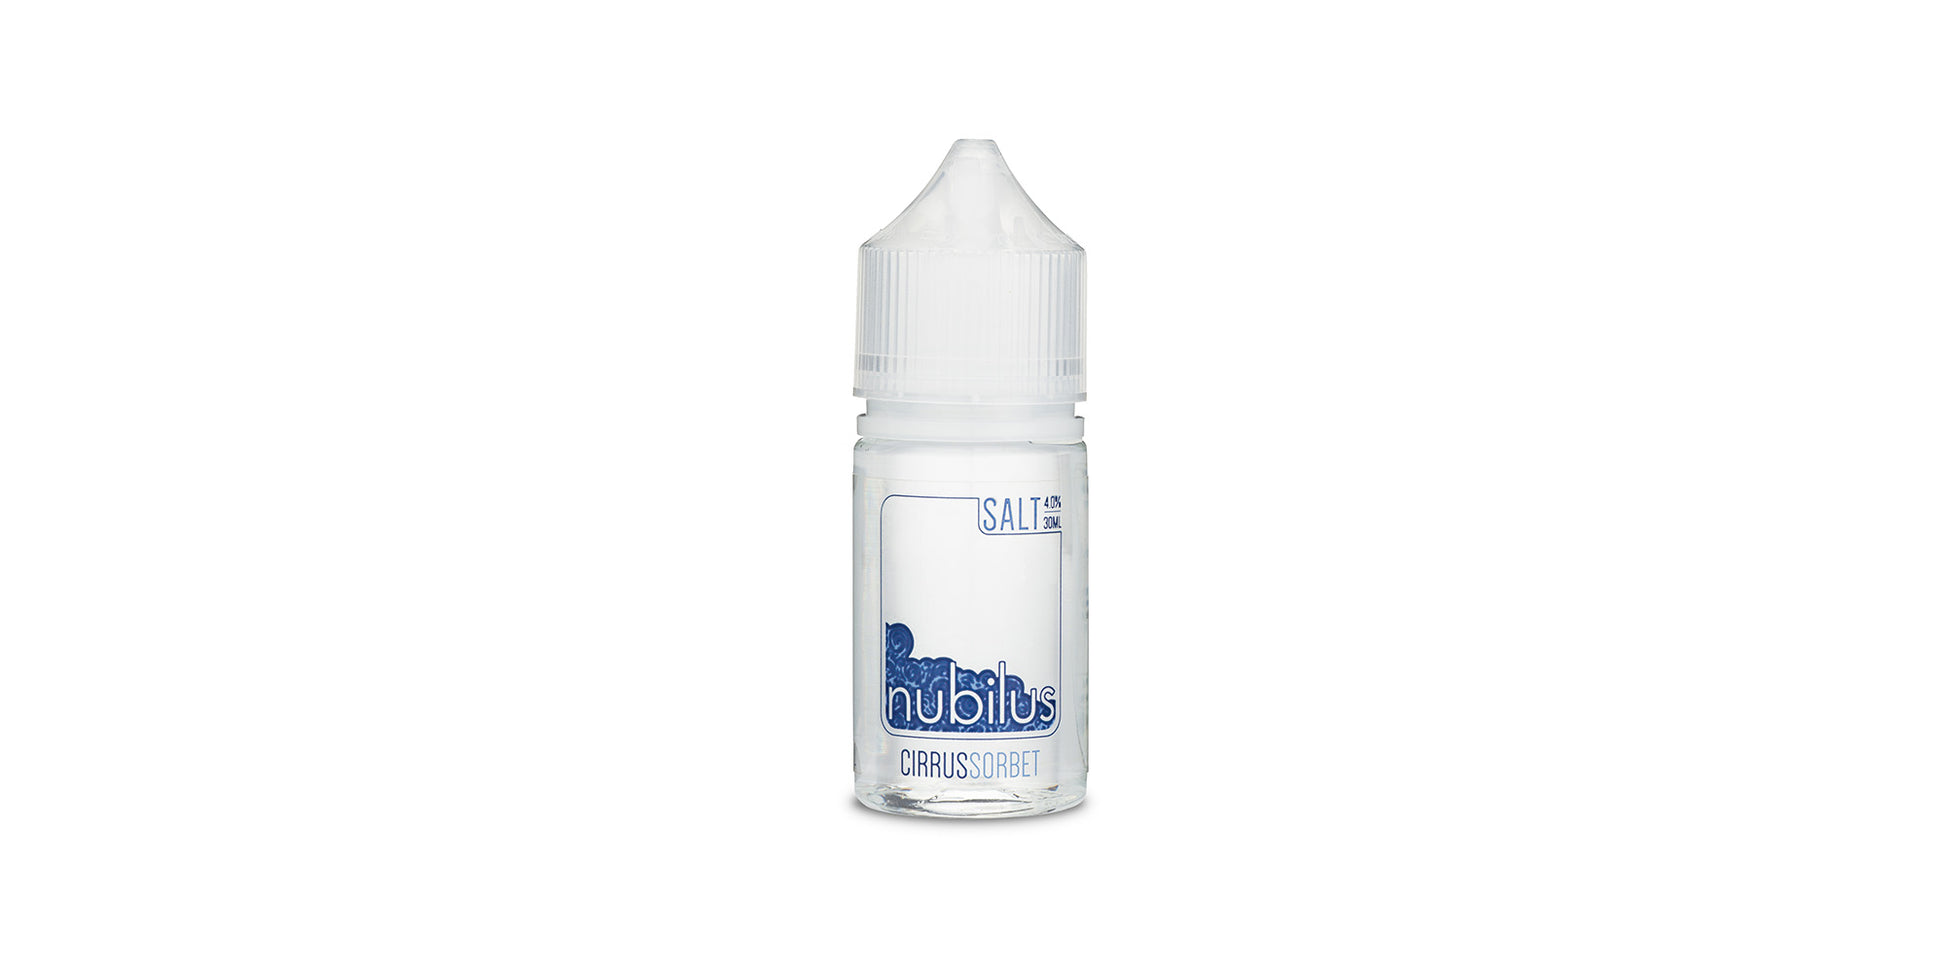 Nubilus - Cirrus Sorbet, Nicotine salt